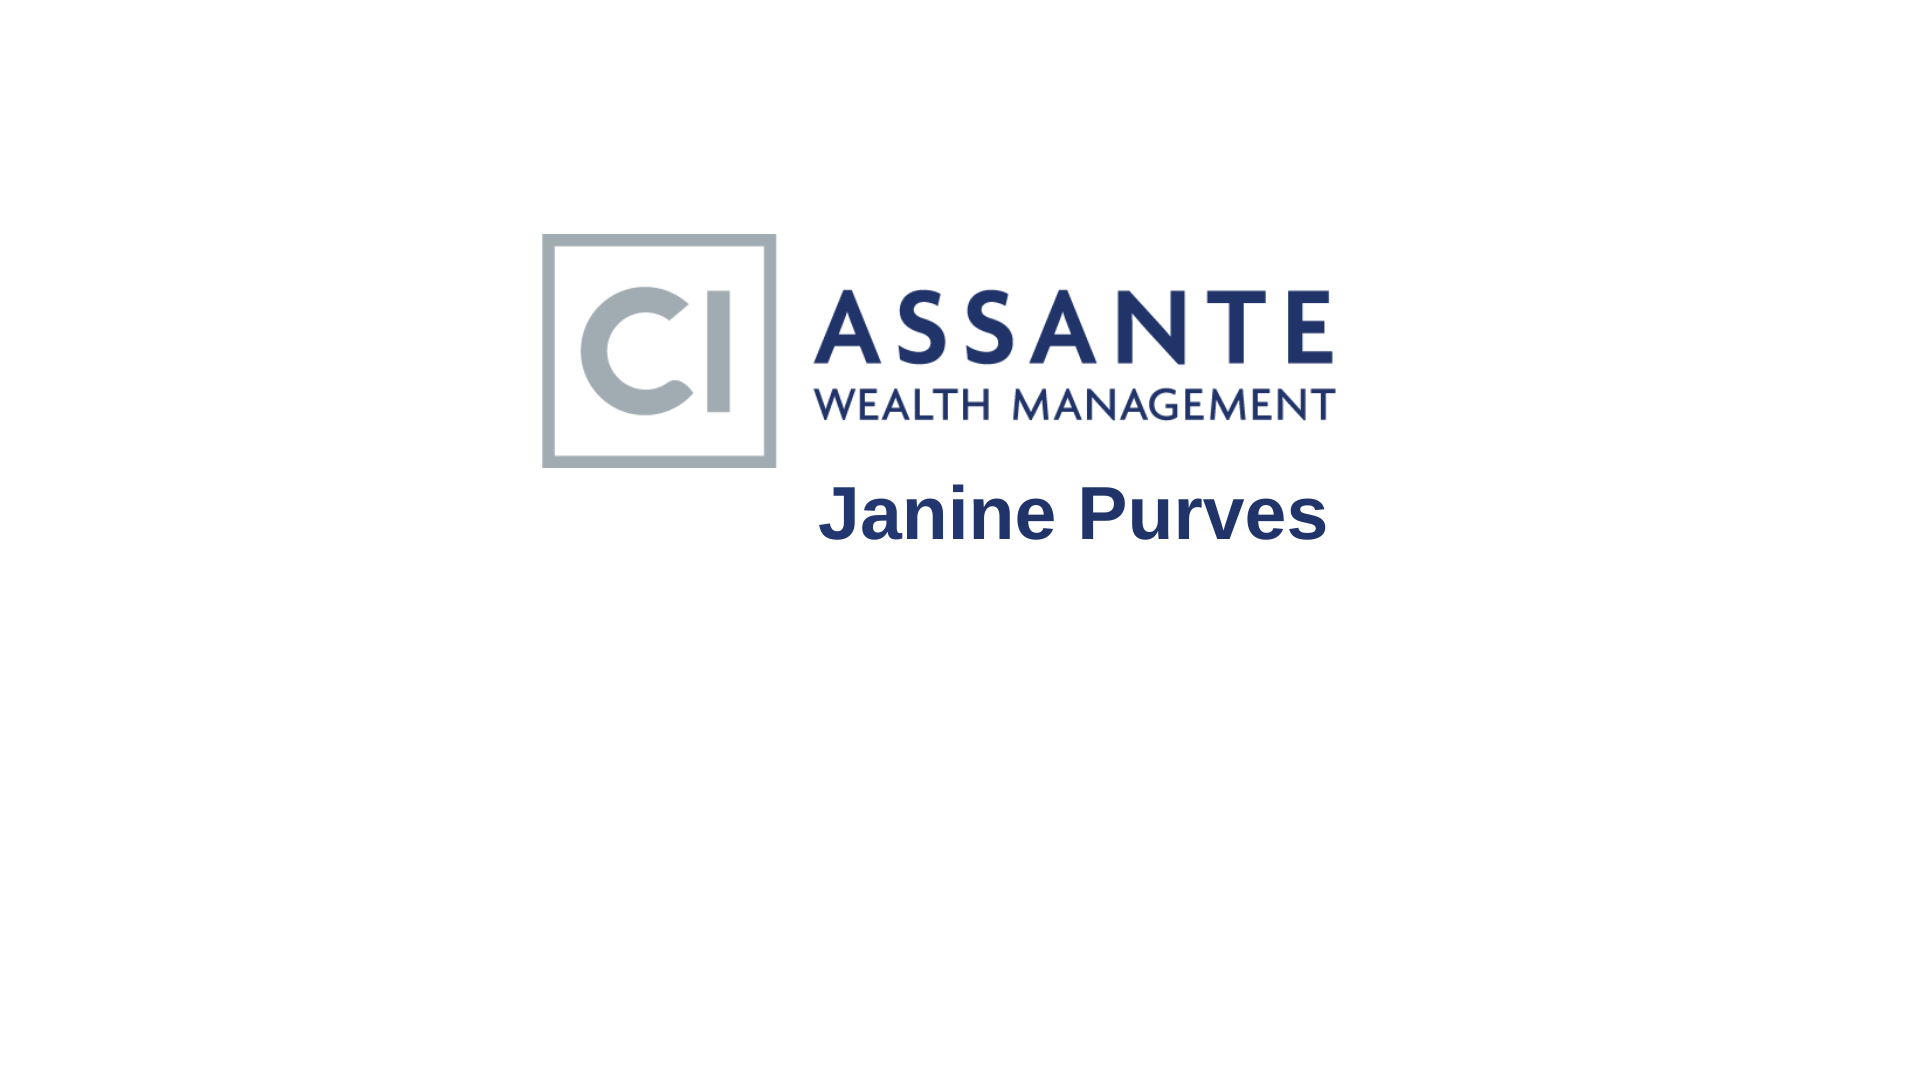 Assante Wealth Management - Janine Purves